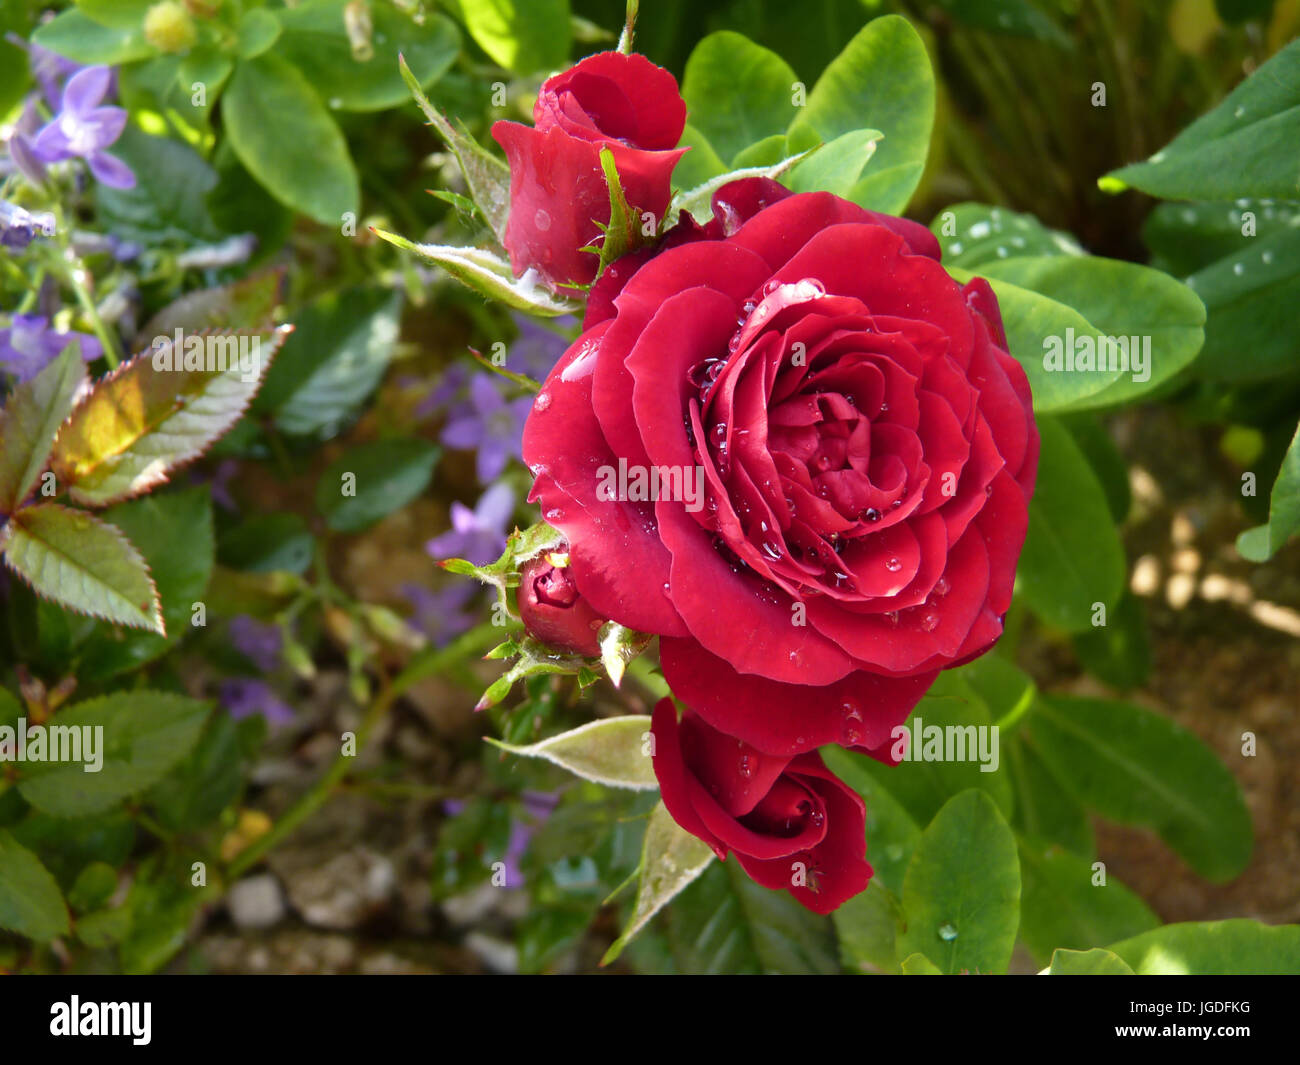 Rosa roja de flor en flor en el jardín o parque cubiertos por gotas de agua Foto de stock